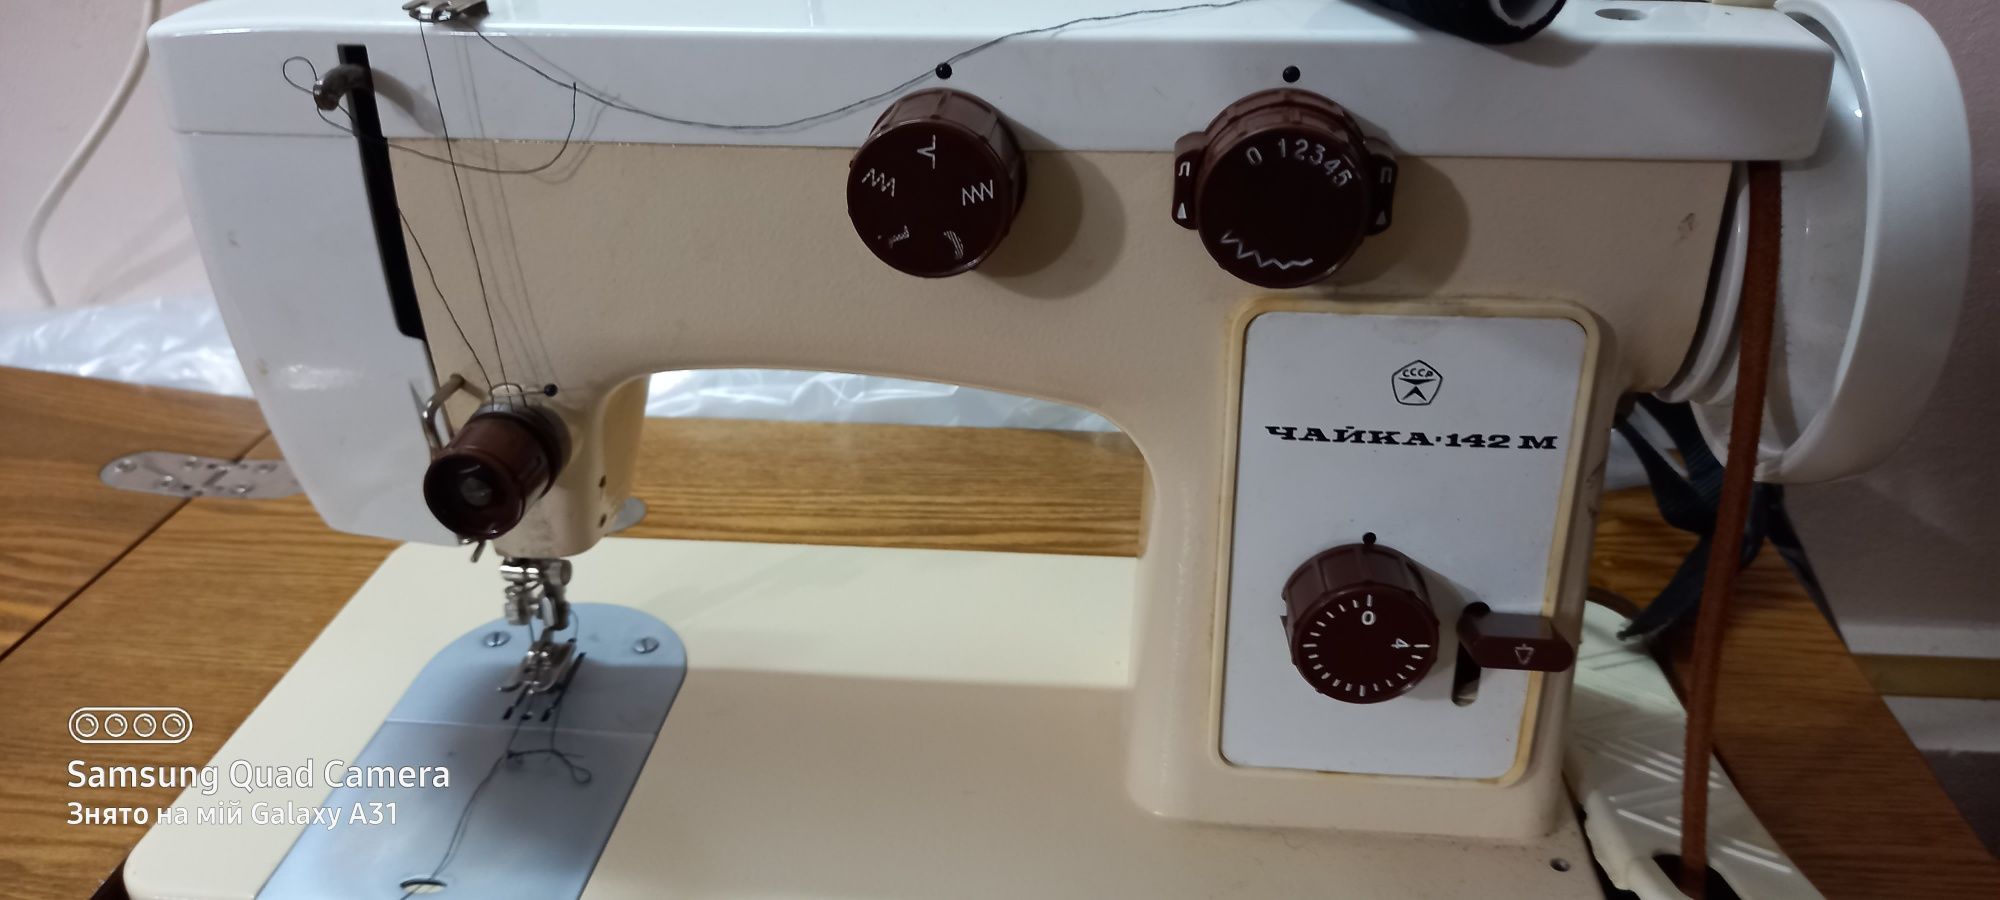 Продам швейна машинка Чайка 142 М